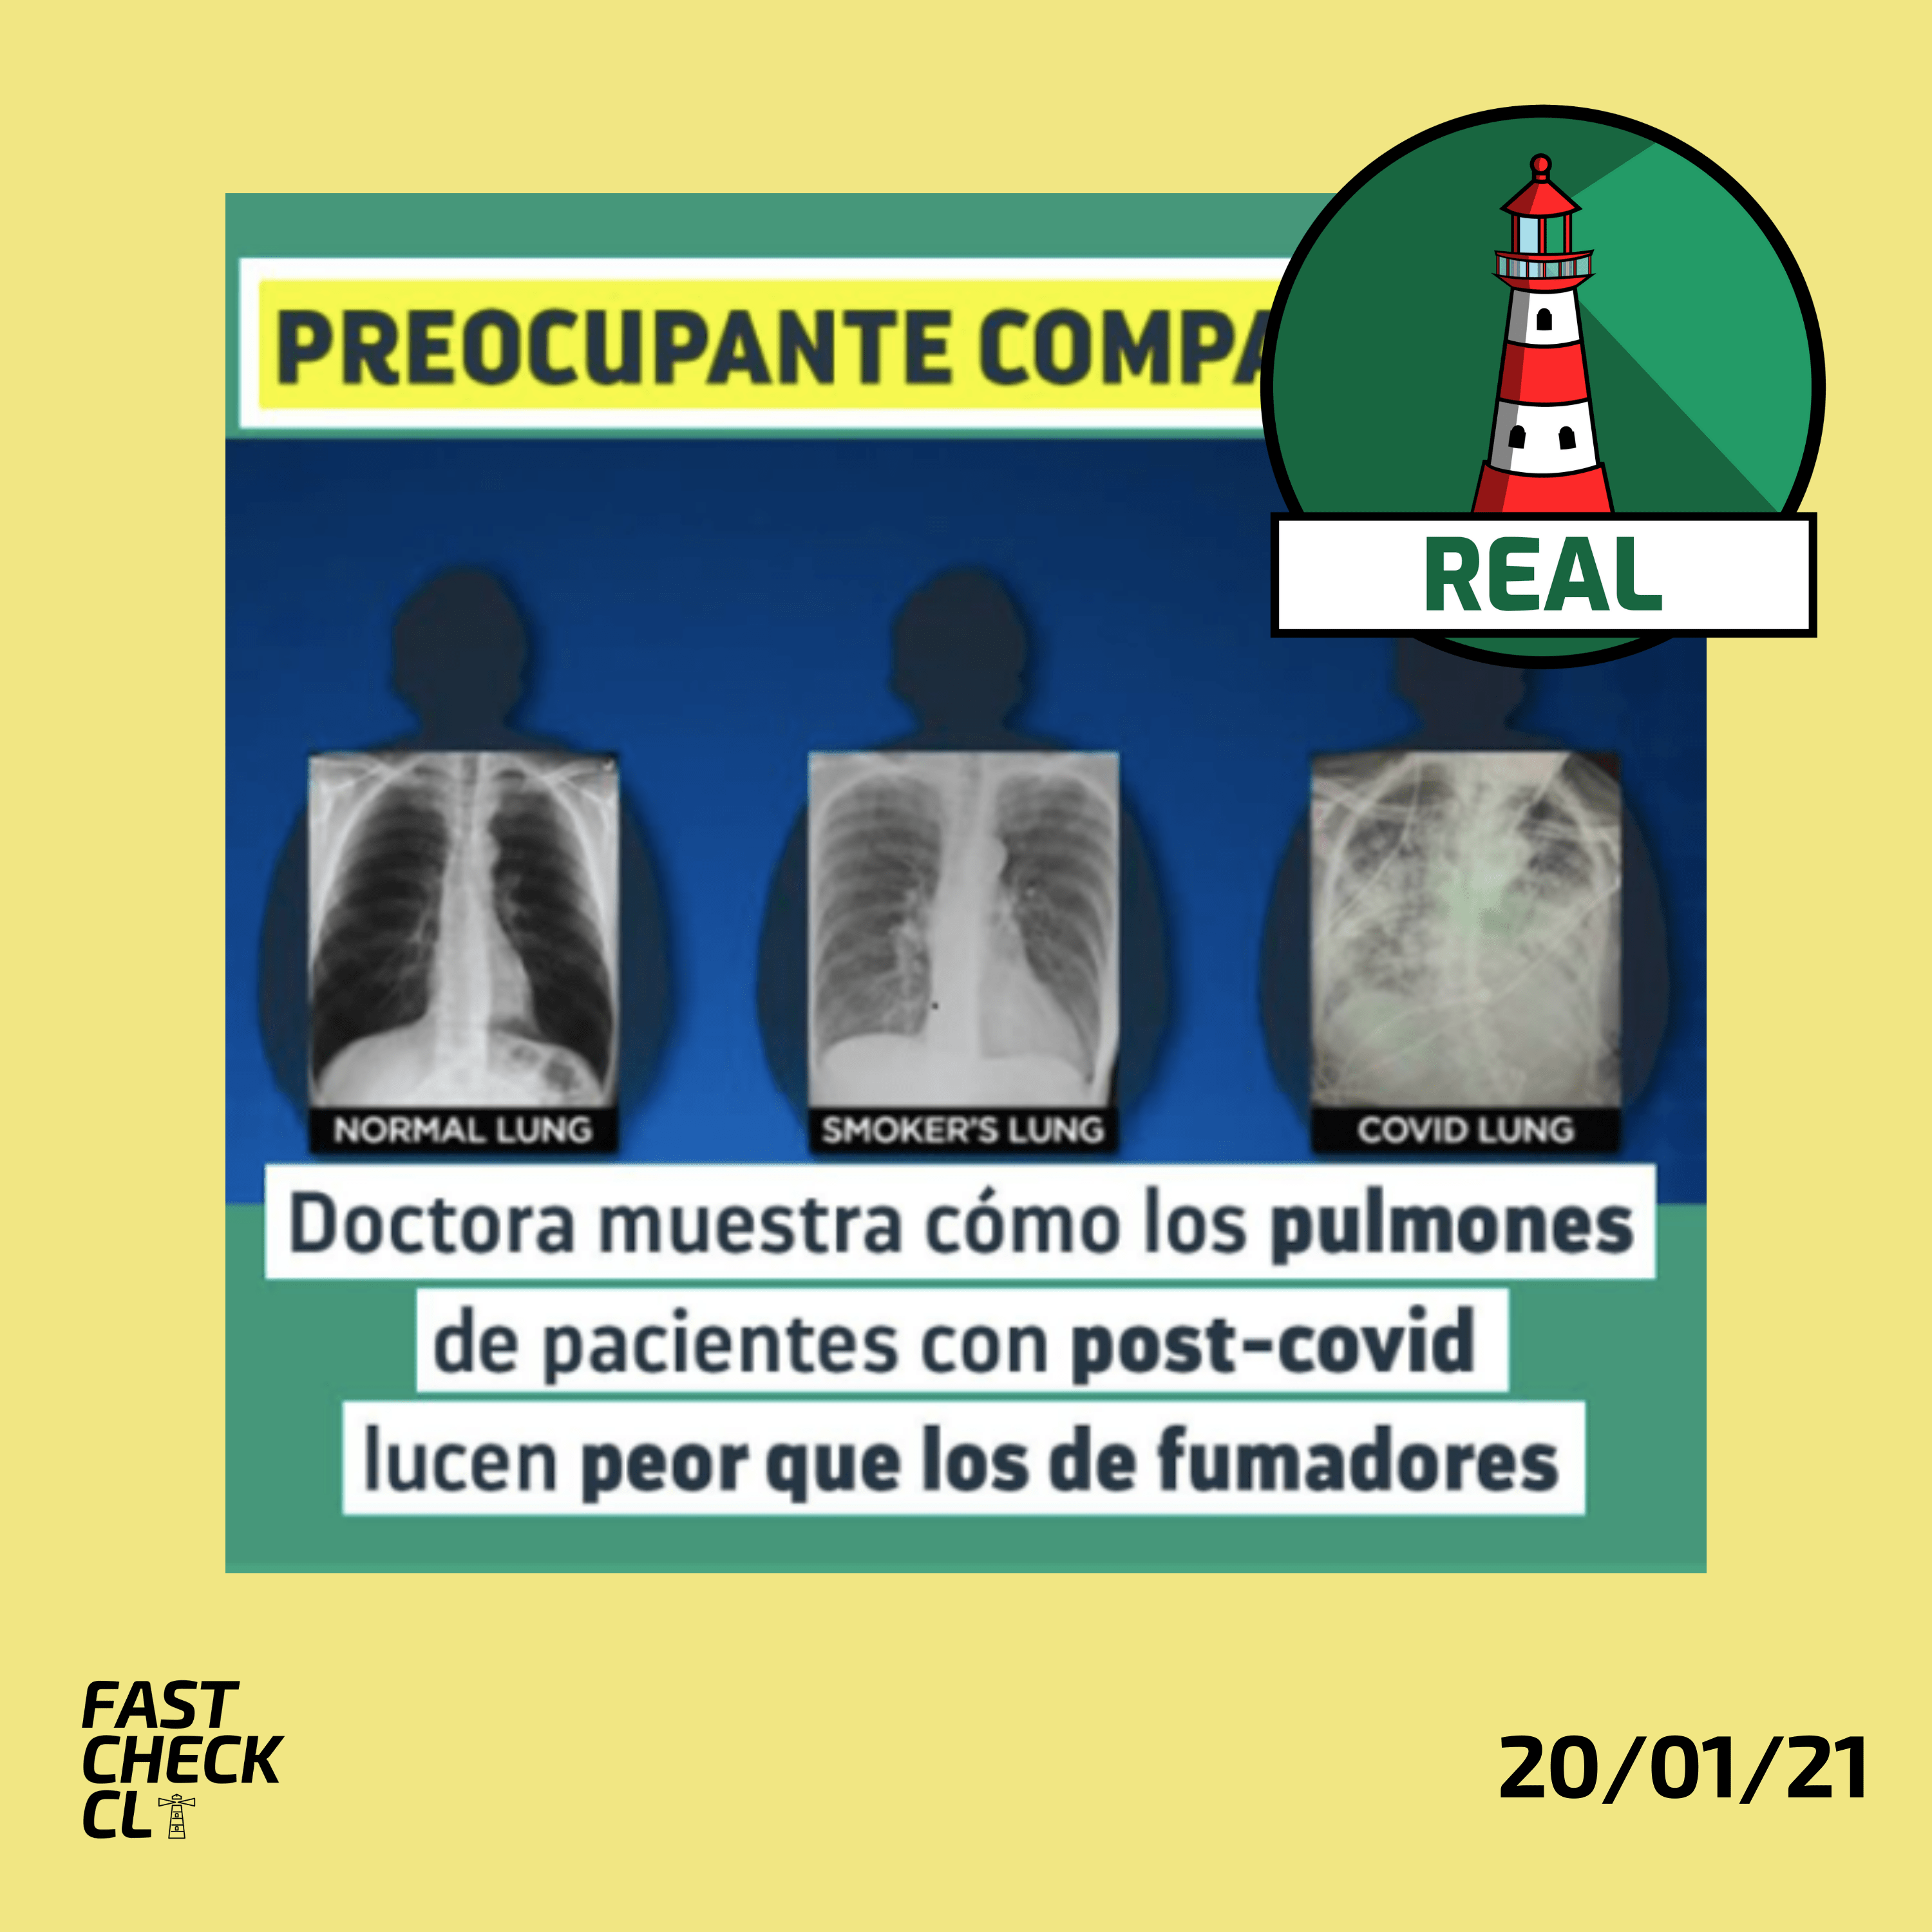 Read more about the article (Imagen) “Doctora muestra cómo los pulmones de pacientes post-Covid lucen peor que los de fumadores”: #Real